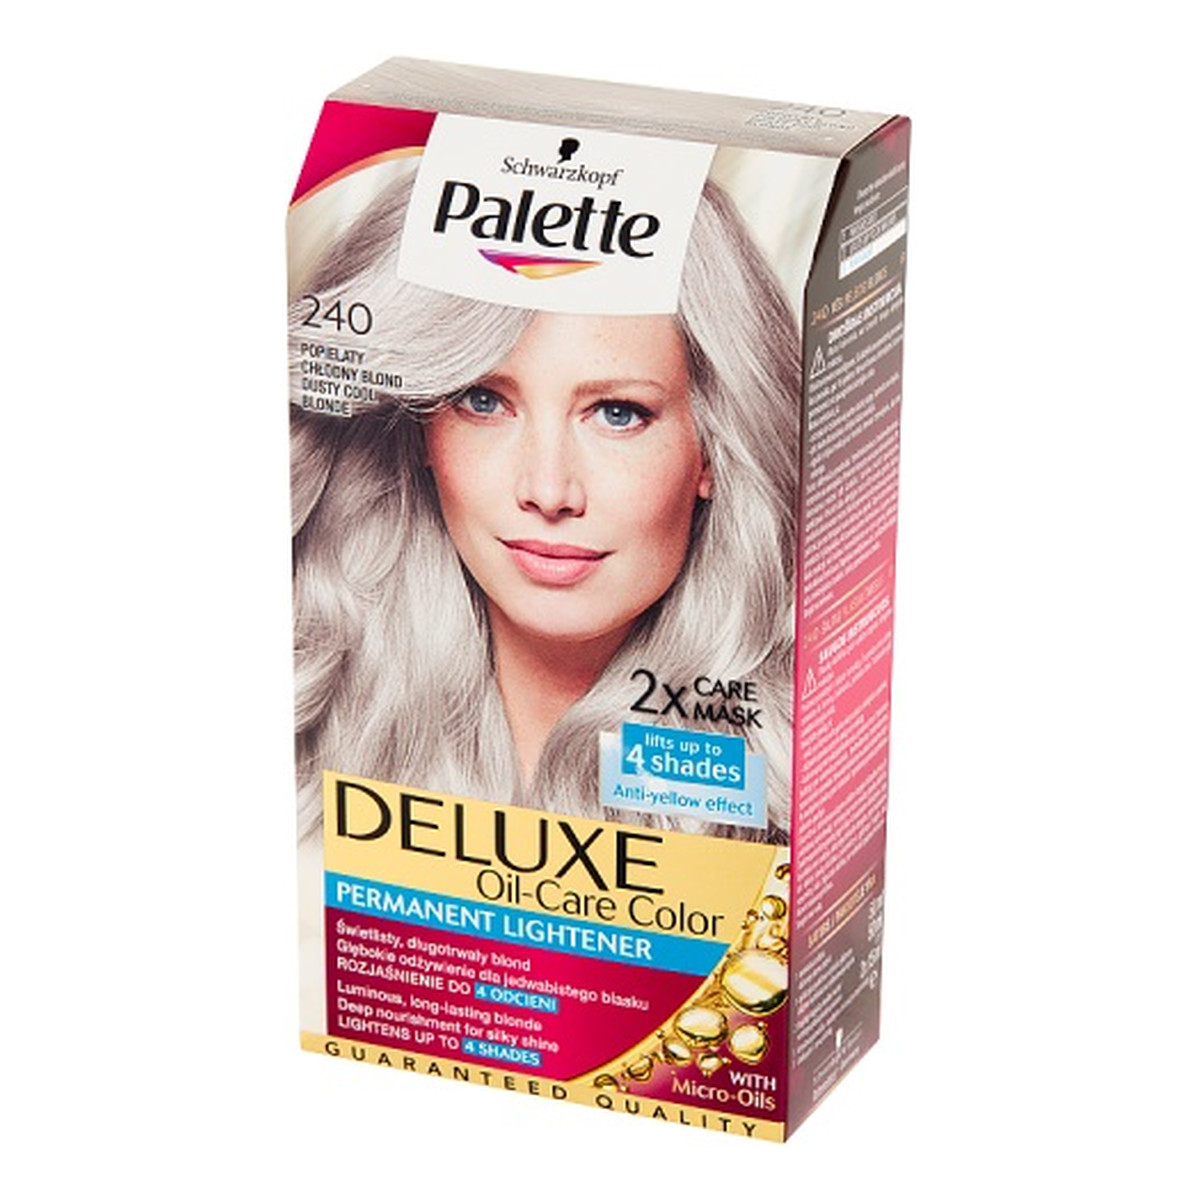 Palette Deluxe oil-care color farba do włosów trwale koloryzująca z mikroolejkami 240 chłodny blond